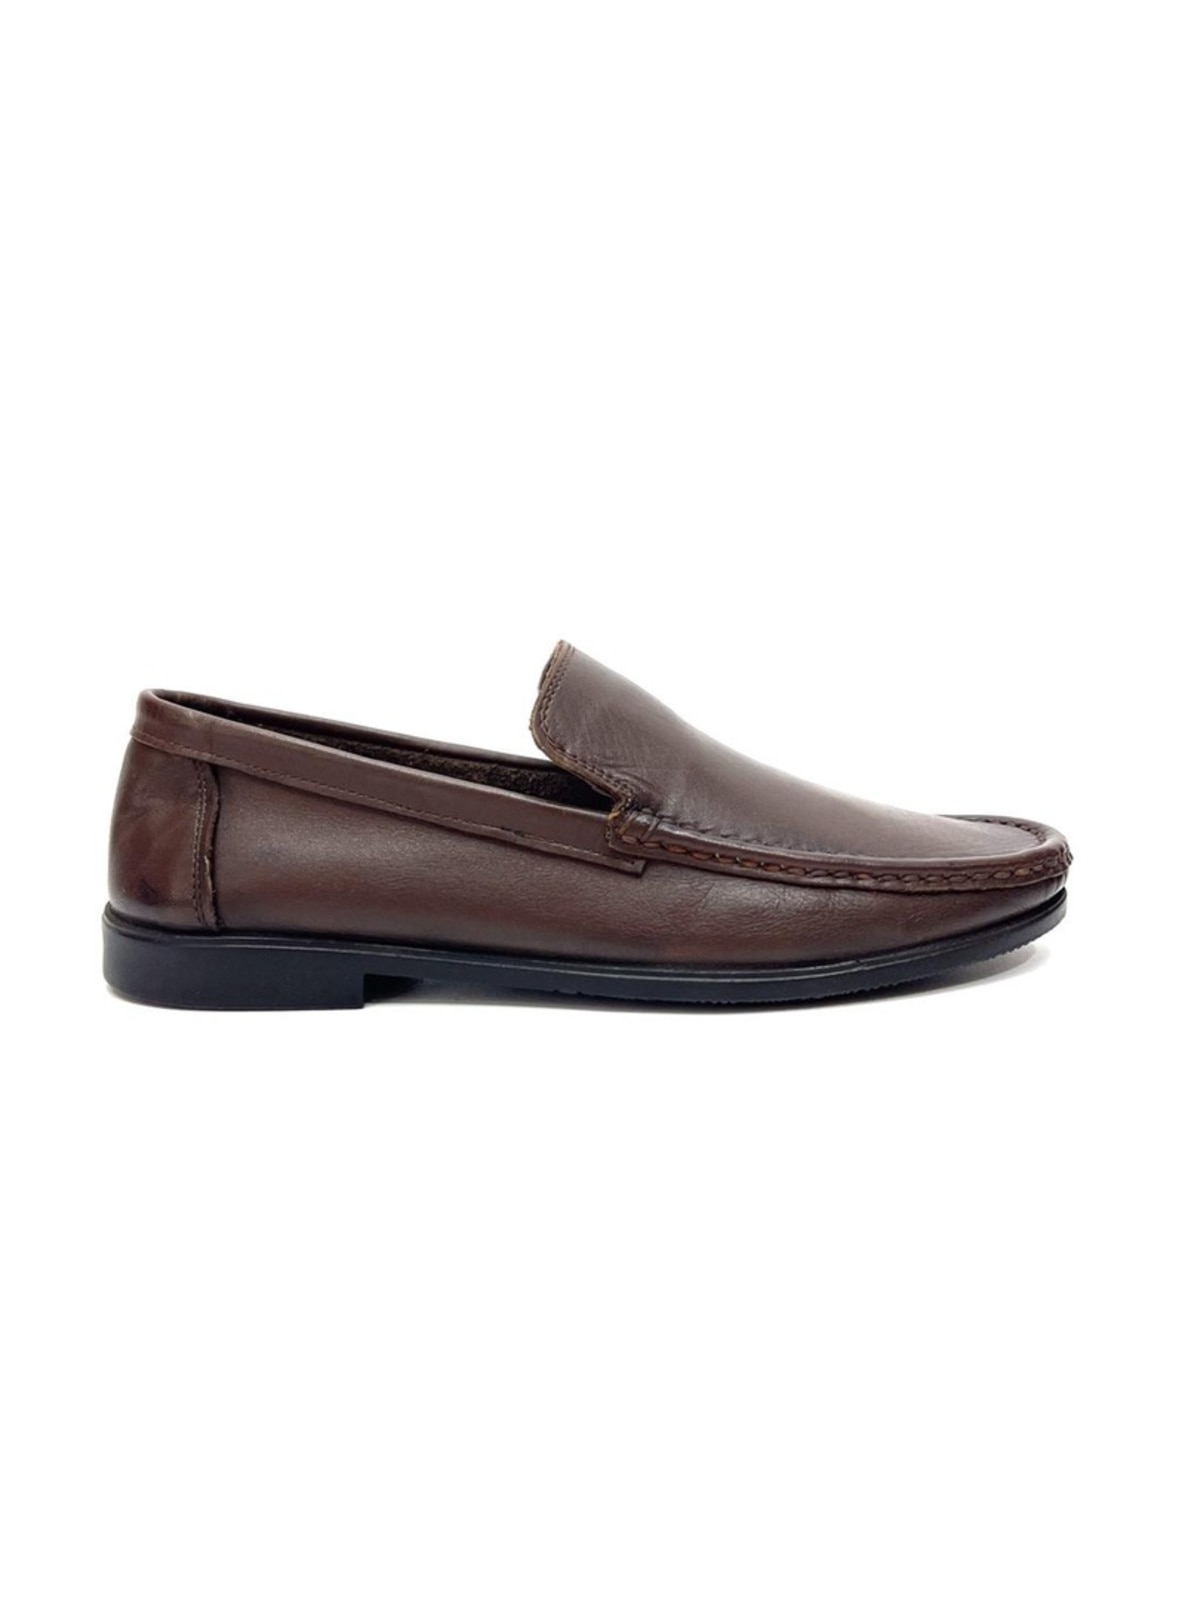 Brown - Loafer - 300gr - Men Shoes